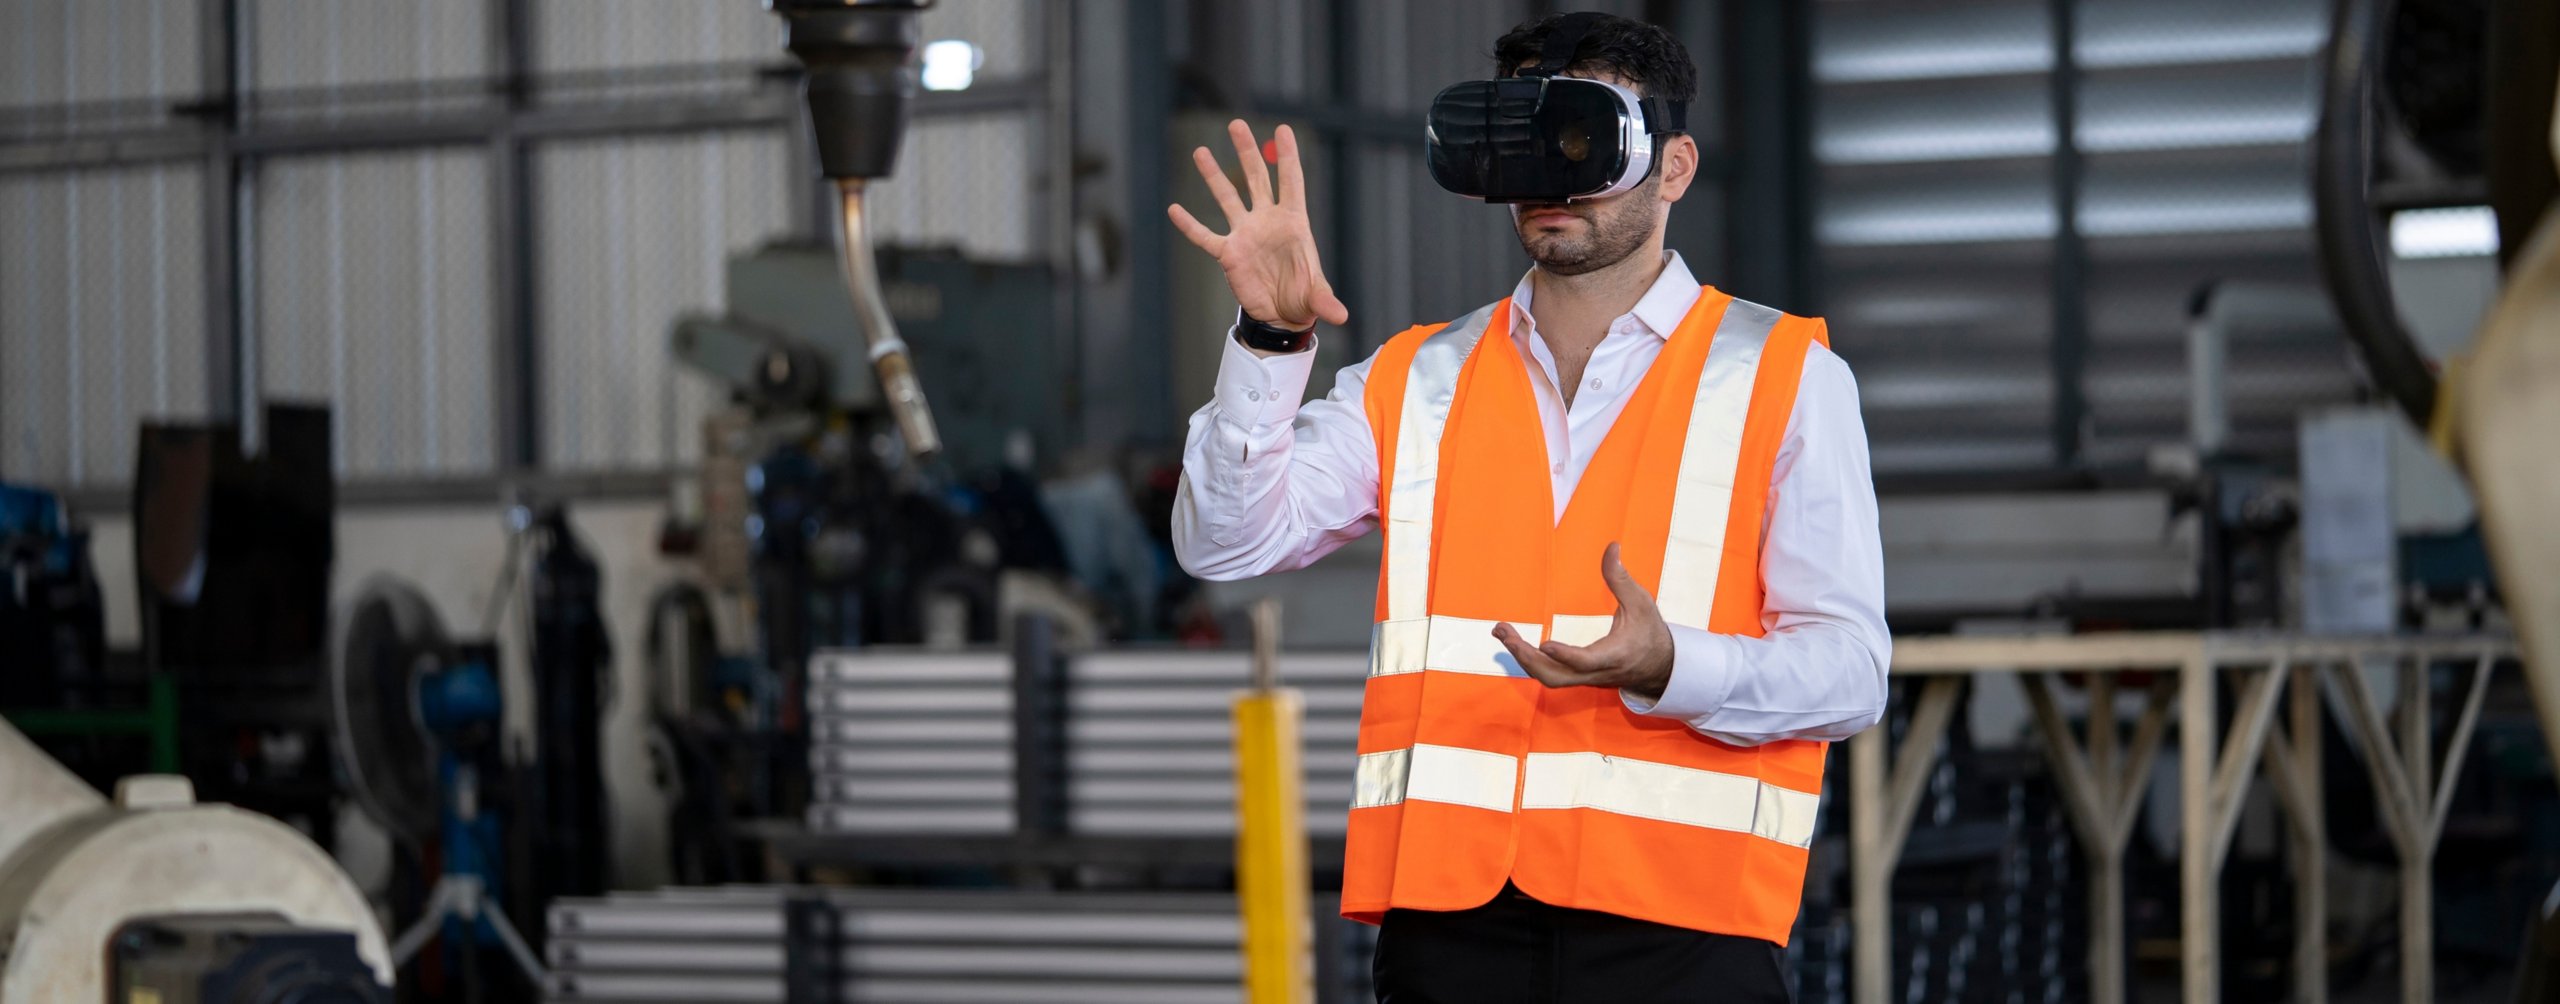 Engenheiro usando um capacete de realidade aumentada em uma fábrica